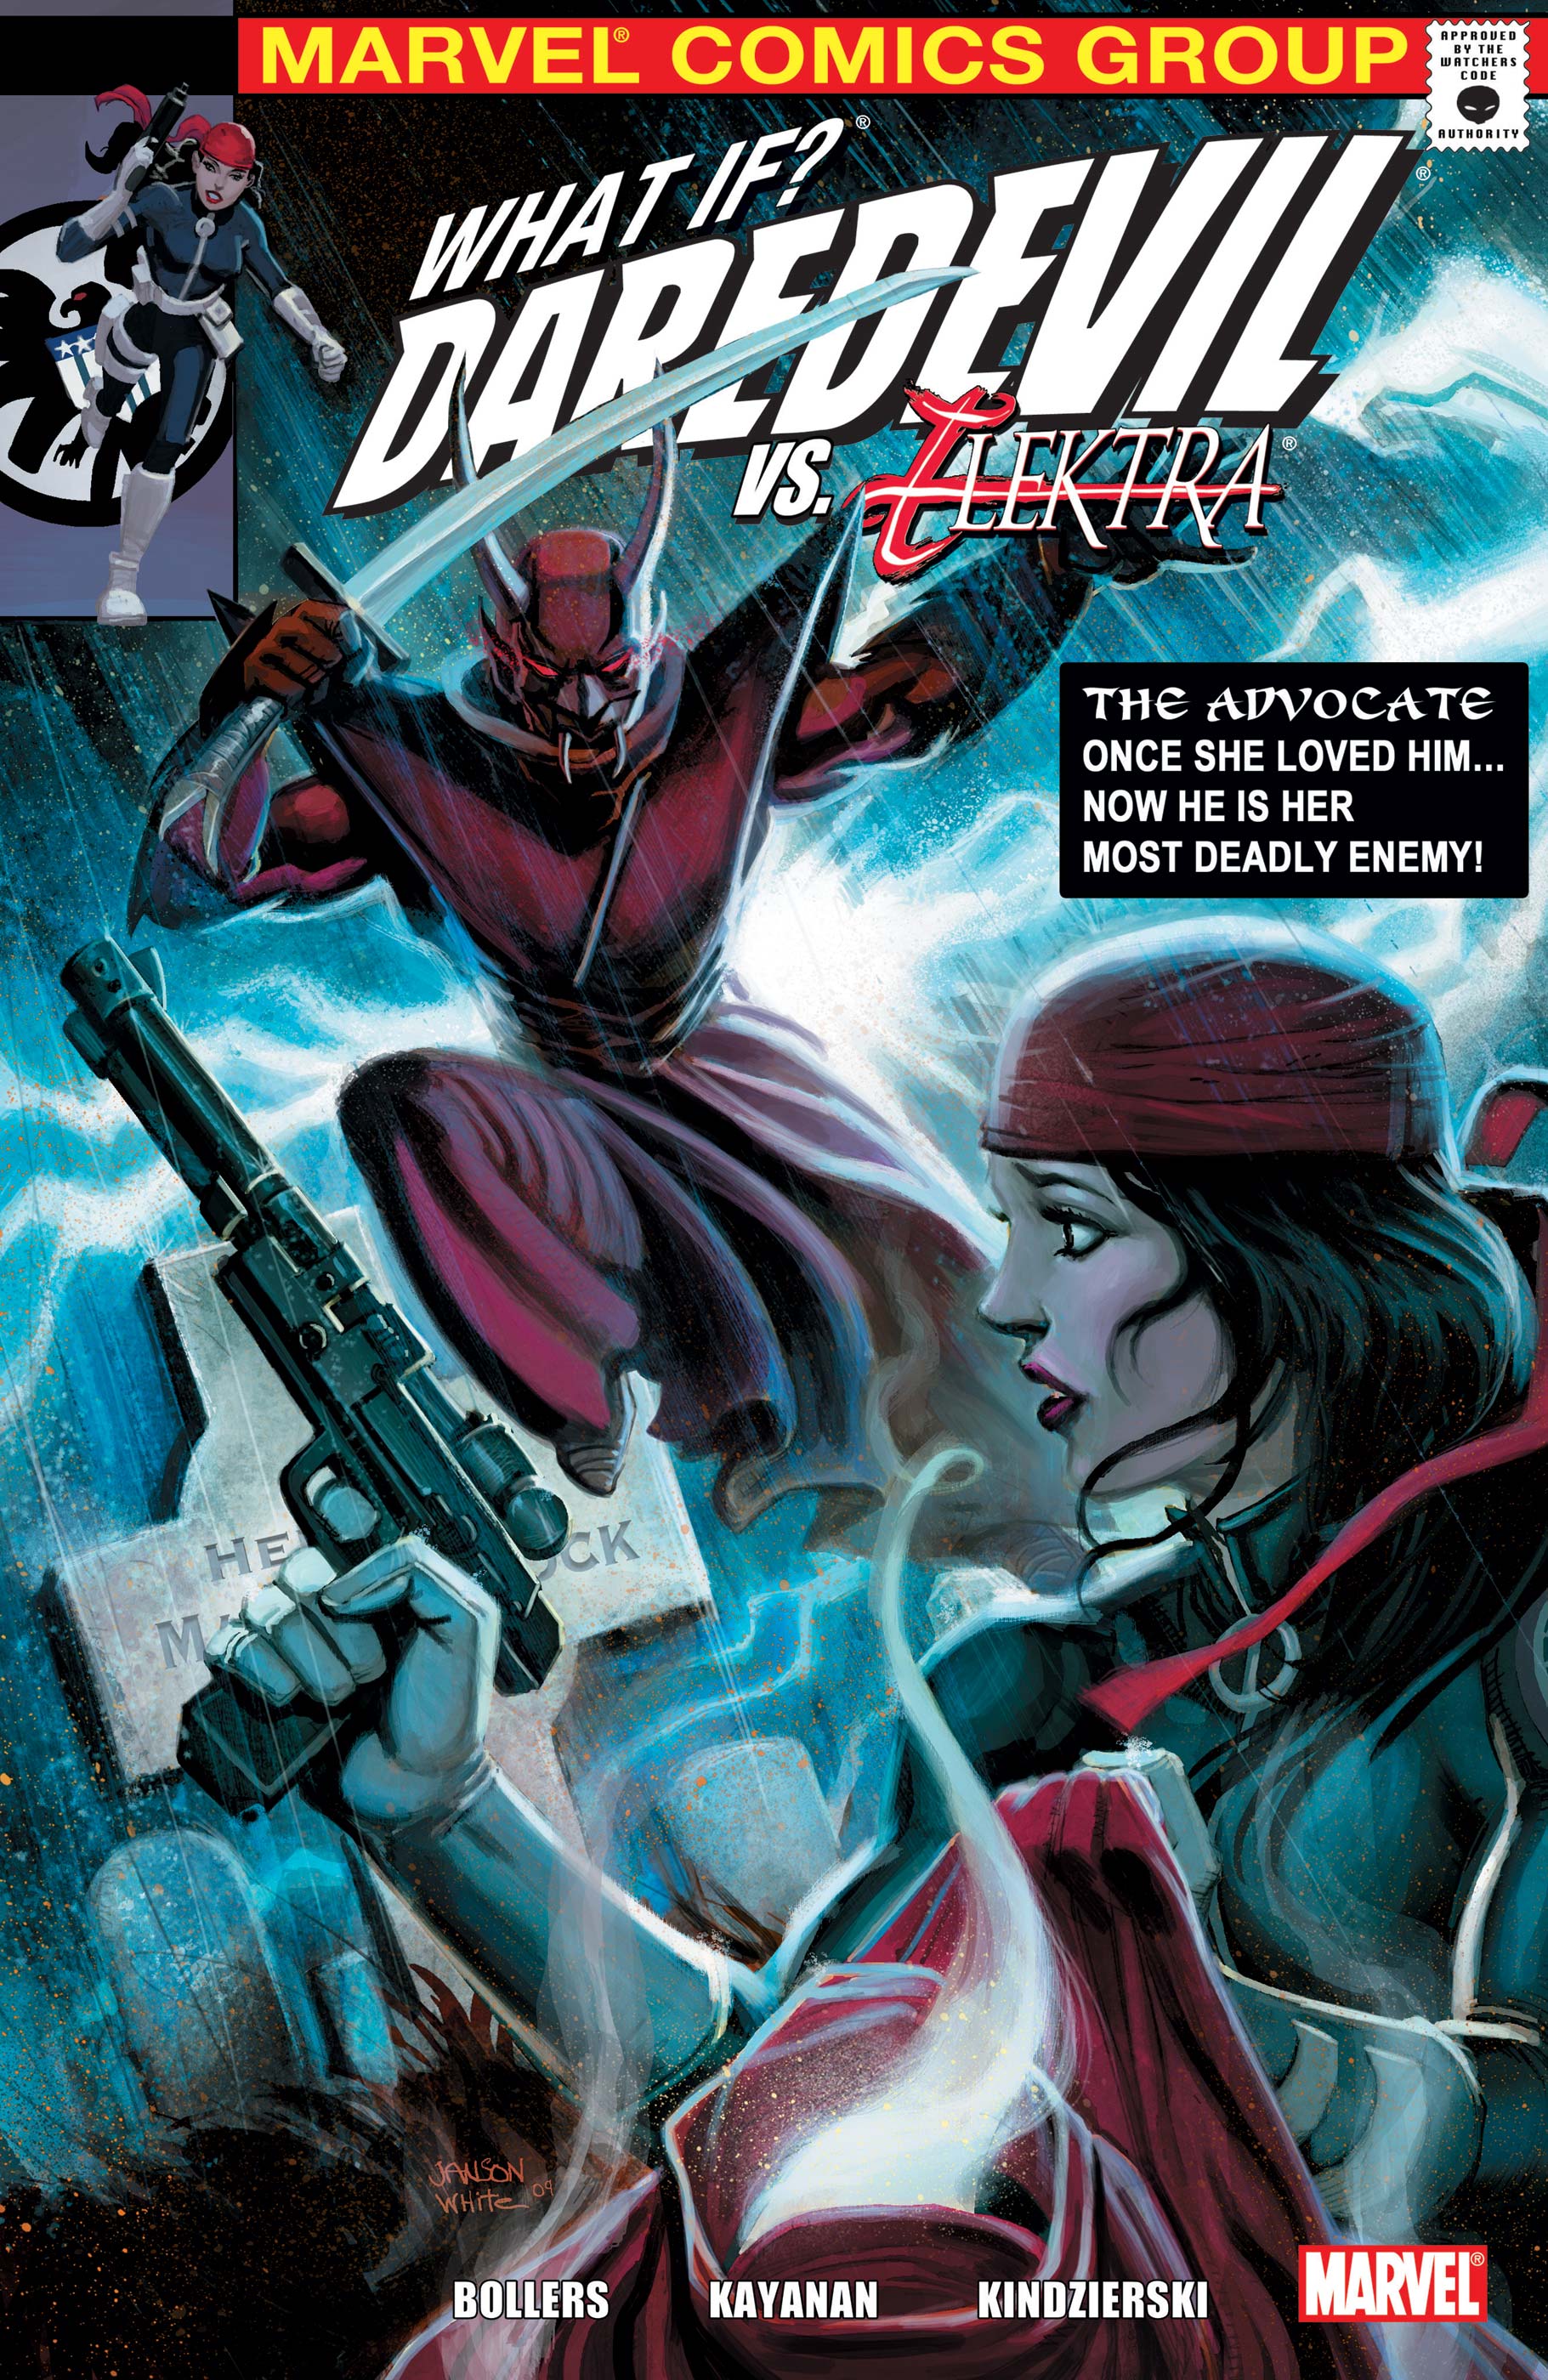 What If? Daredevil Vs. Elektra (2009) #1